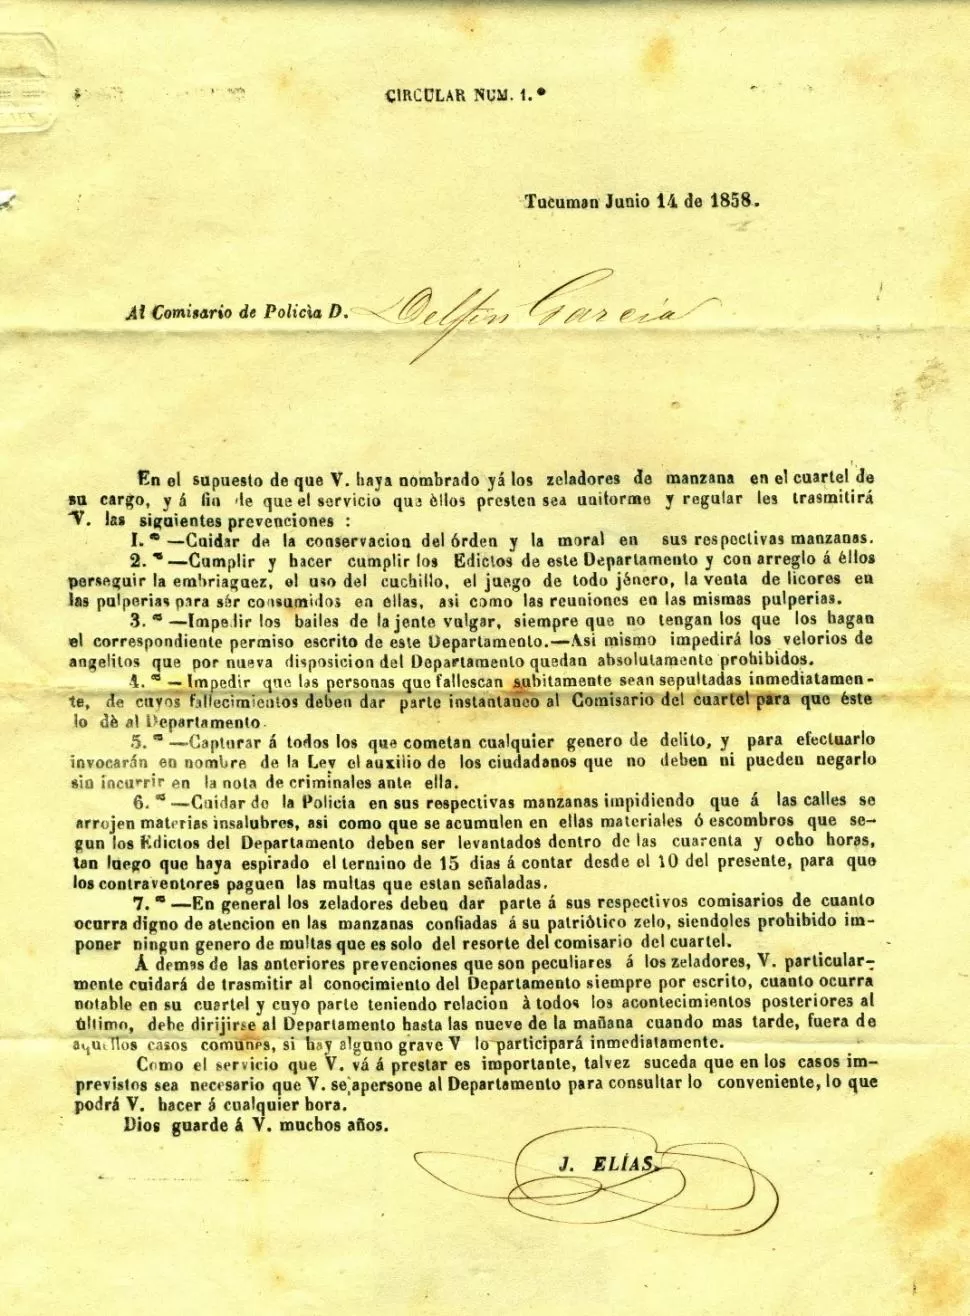 CIRCULAR DE 1858. En hoja suelta y dirigida a los comisarios, se imprimió la reglamentación del jefe de Policía respecto a los celadores. LA GACETA / ARCHIVO